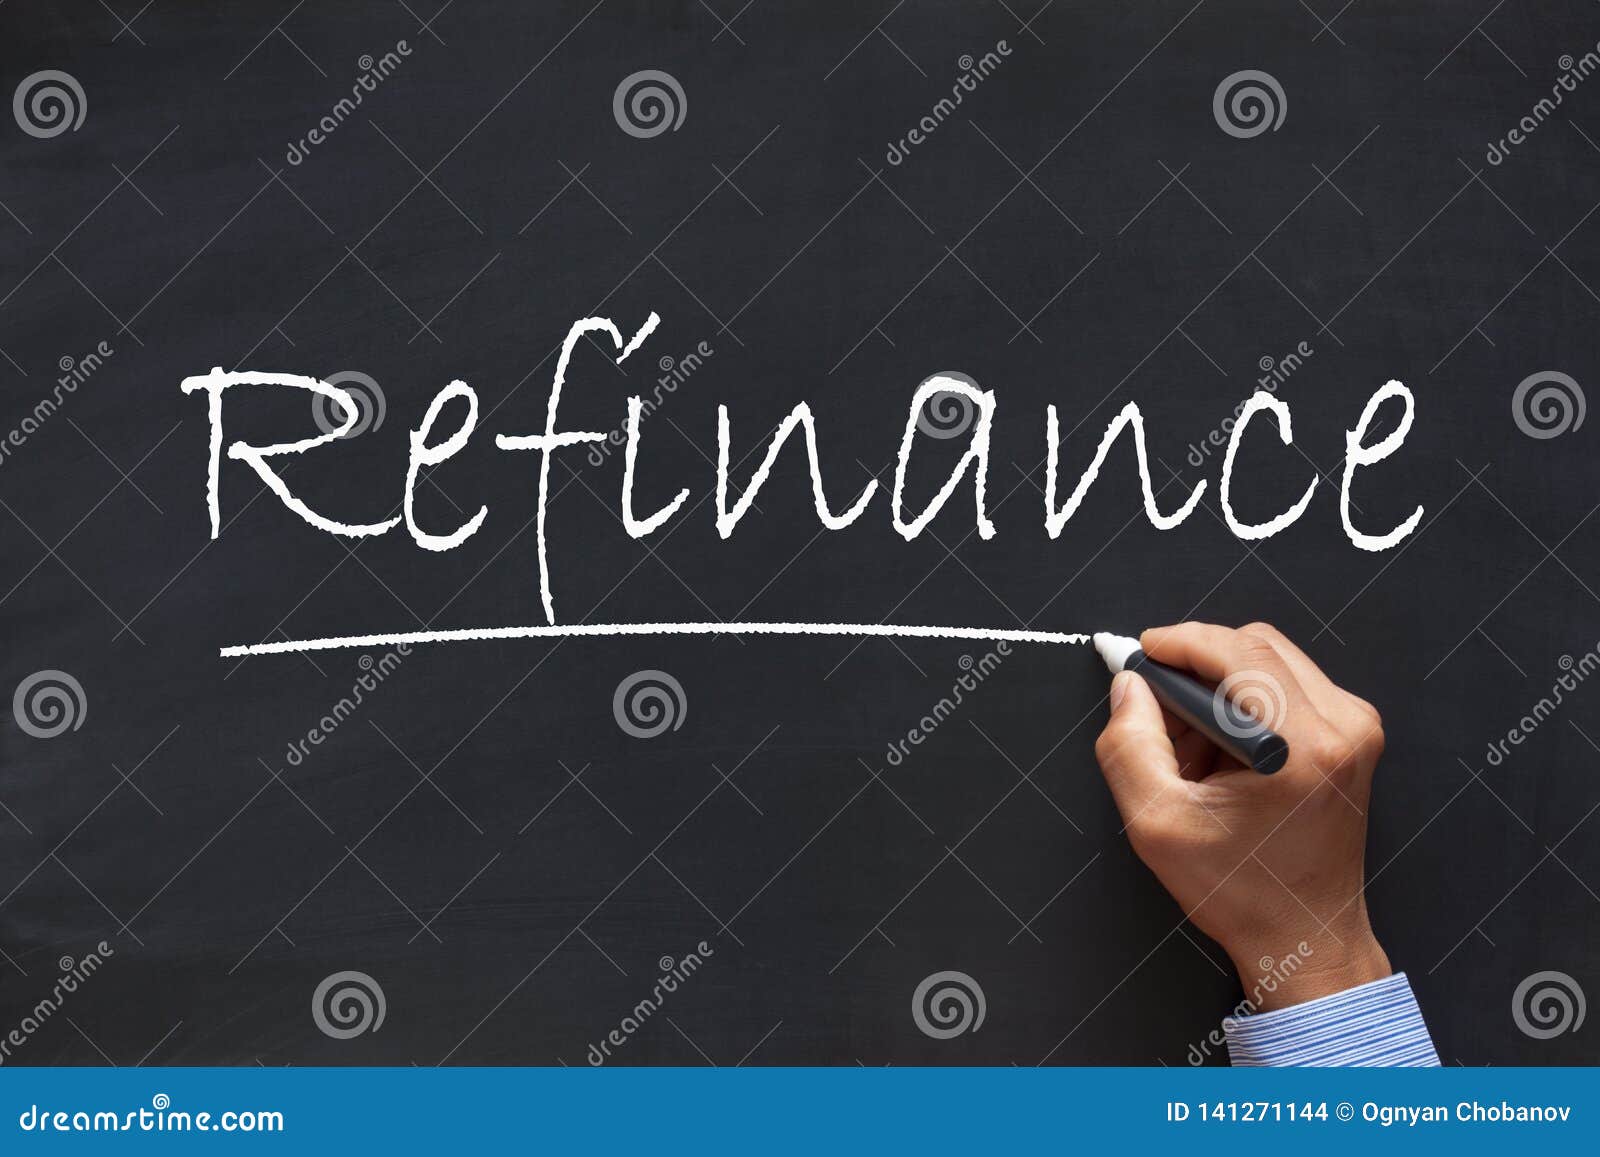 refinance message concept